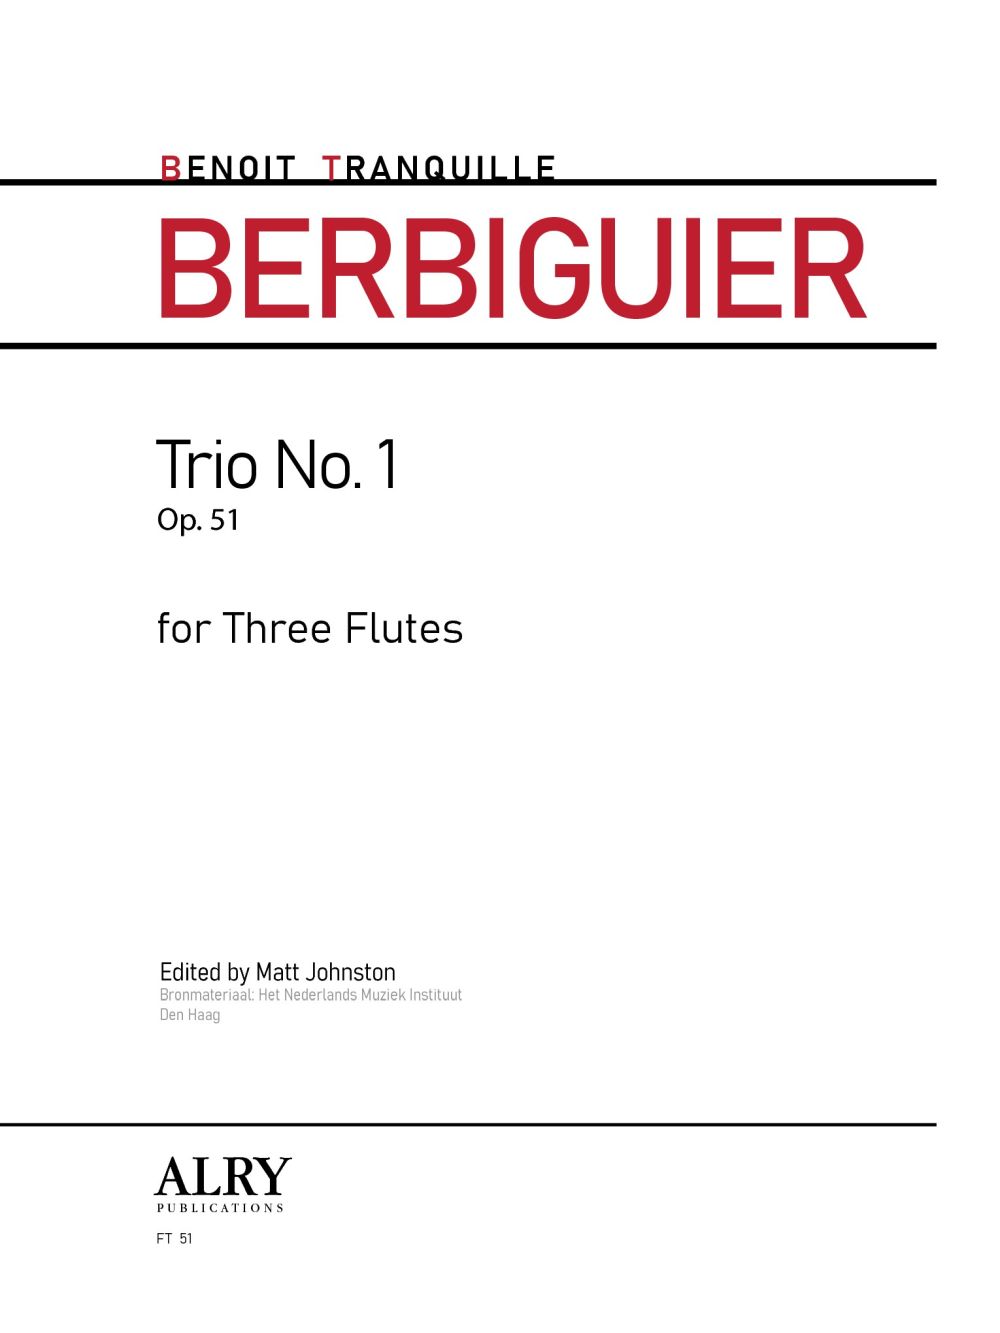 Trio No. 1, Op. 51 (TRANQUILLE BERBIGUIER BENOIT)